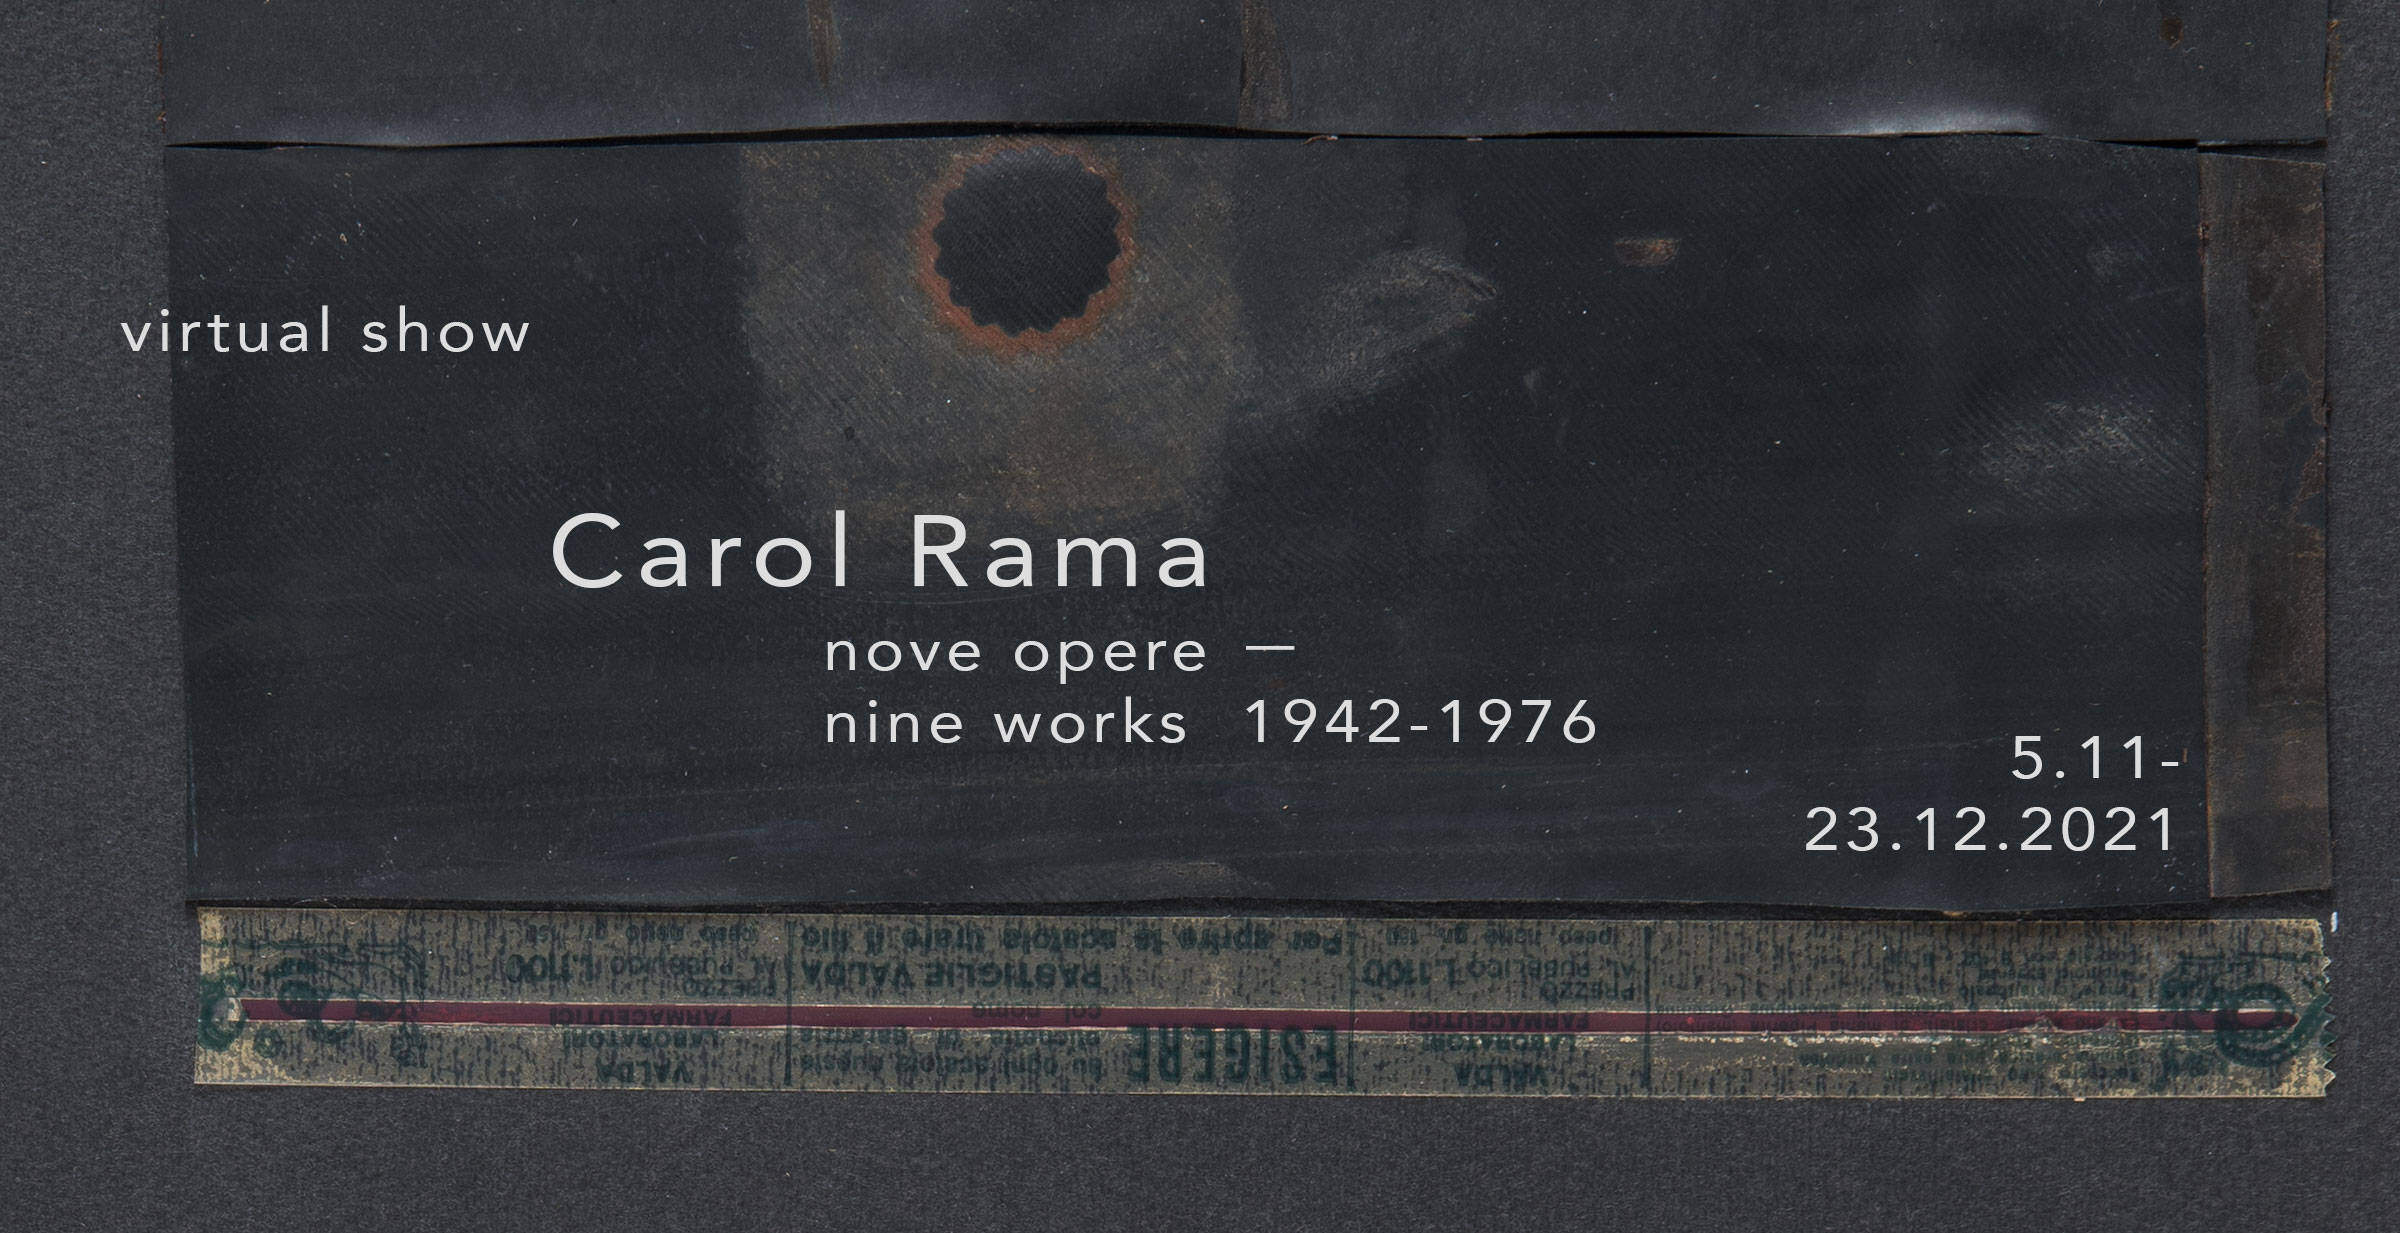 Carol Rama, nine works, virtual show, Il Ponte, Firenze